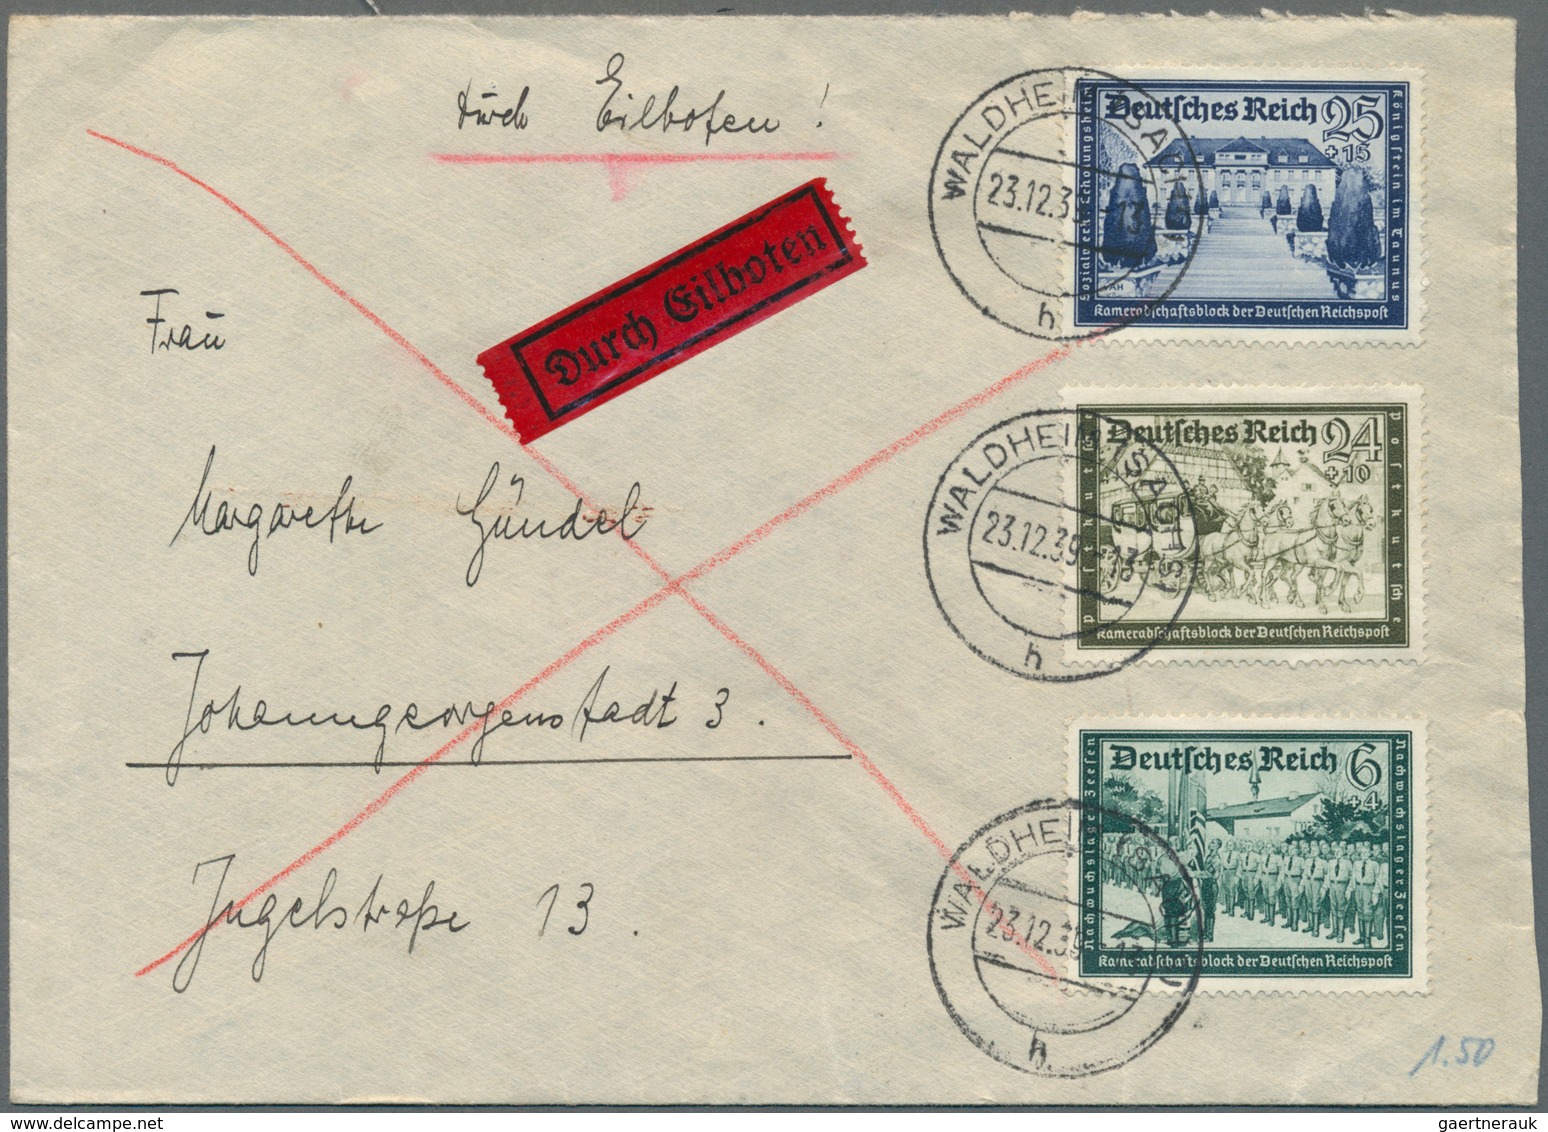 Deutschland: 1870/1980 (ca.), vielseitiger Bestand von ca. 185 Briefen/Karten/Ganzsachen, dabei Kolo